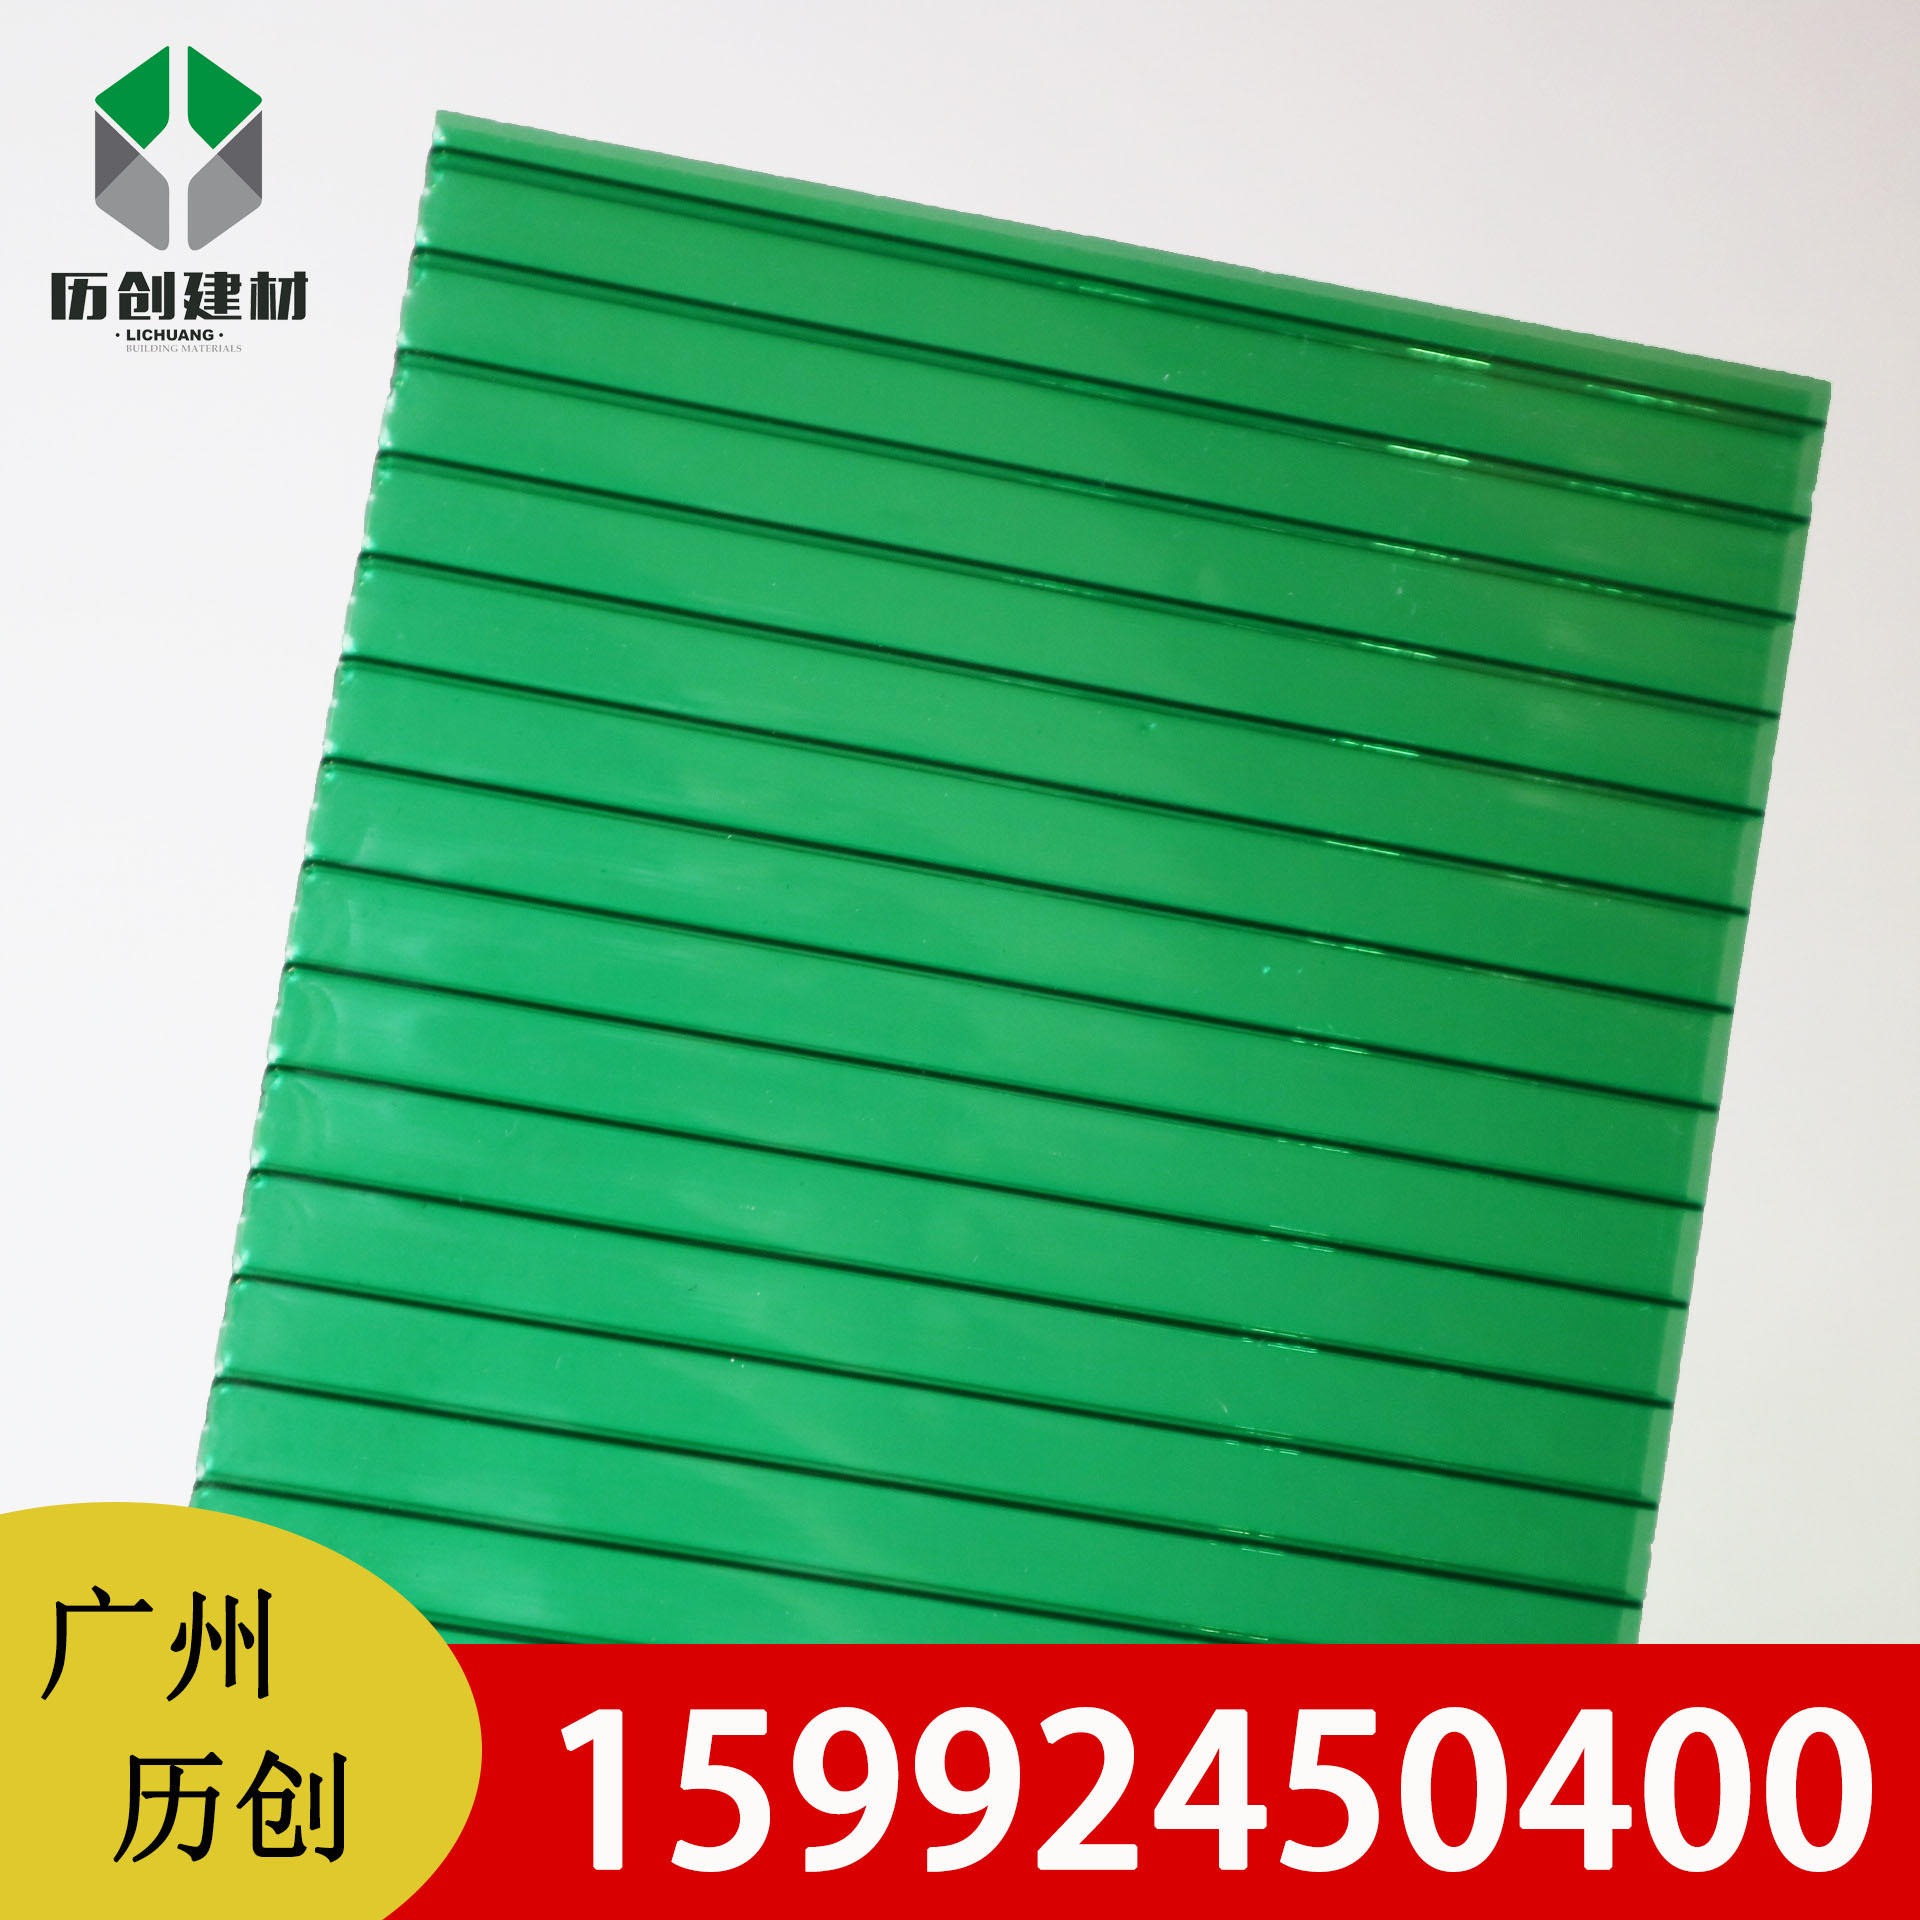 中空板 河北阳光板 双层12mm绿色PC阳光板 中空板广告牌 阳光花房 透光性佳 厂家直销